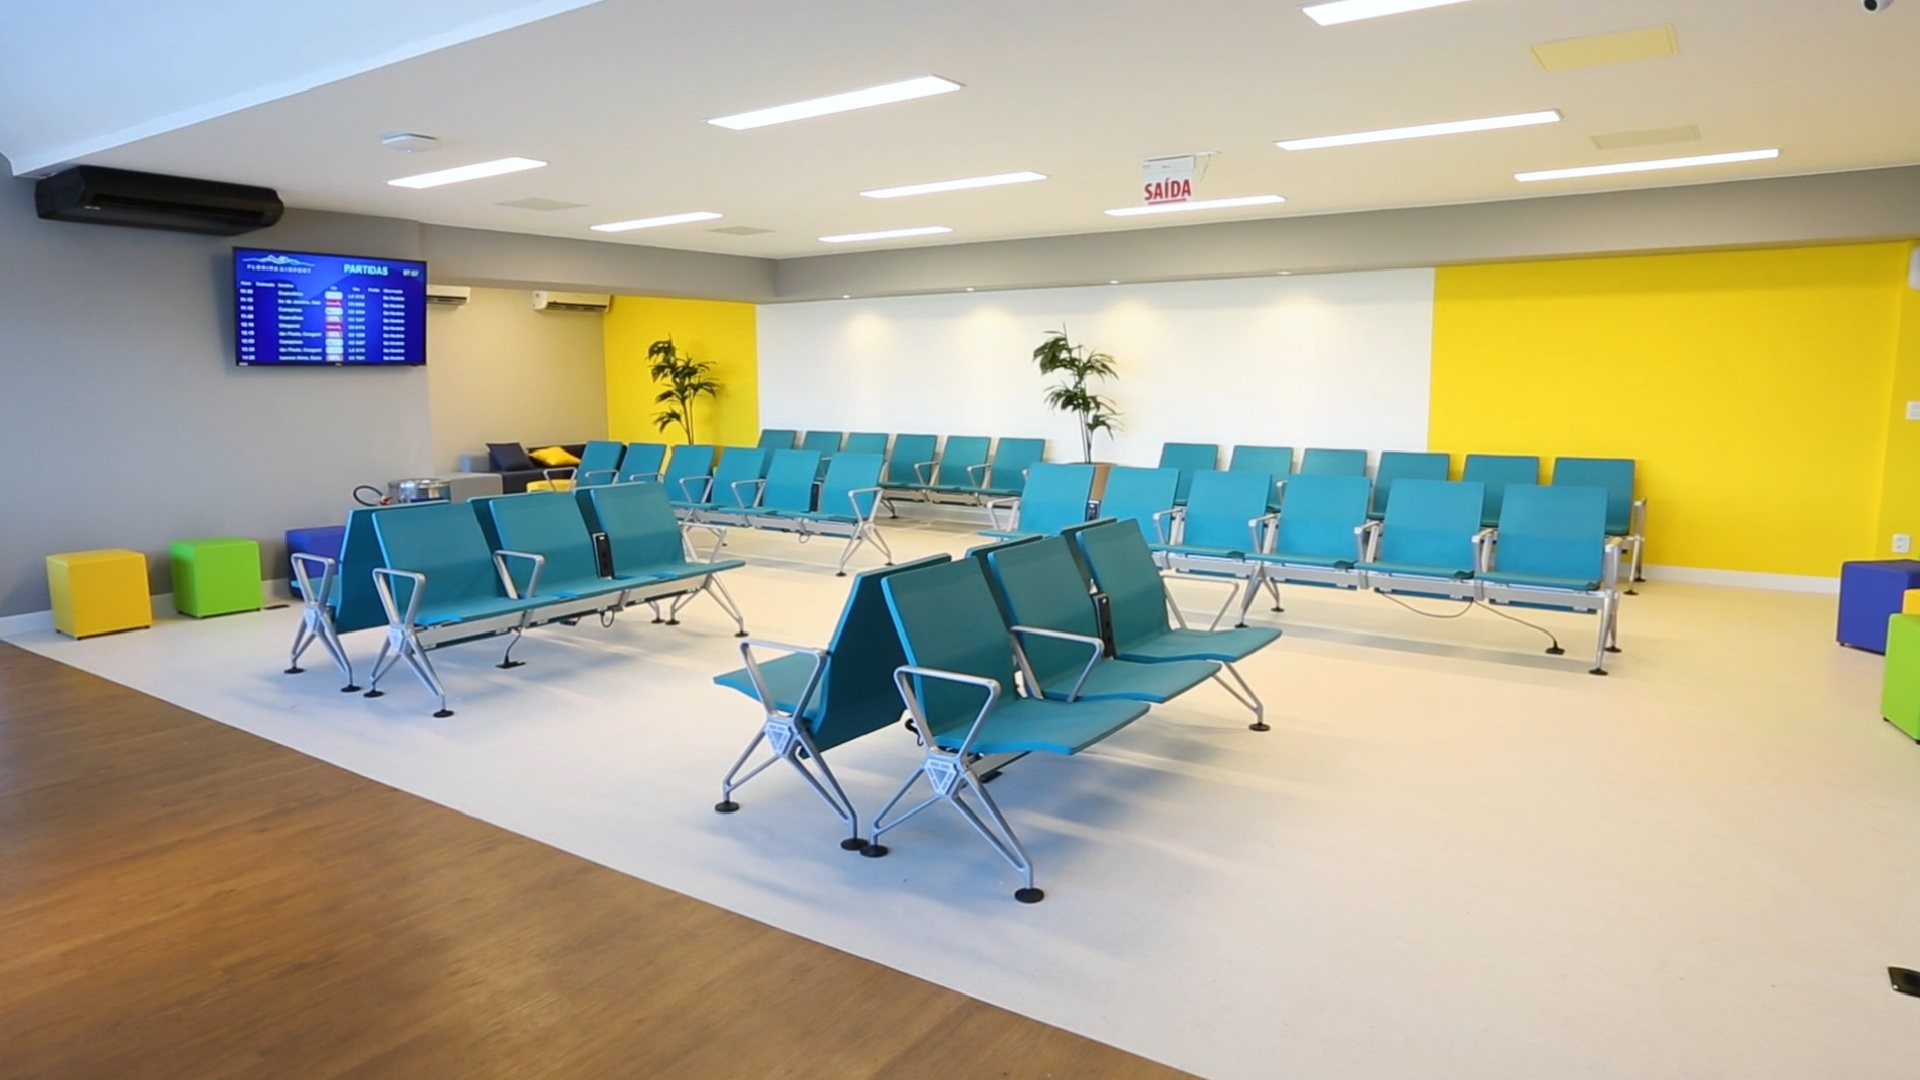 Sala de espera com as longarinas Vitra, cadeiras oficiais do novo aeroporto. Imagem: Floripa Airport/Divulgação